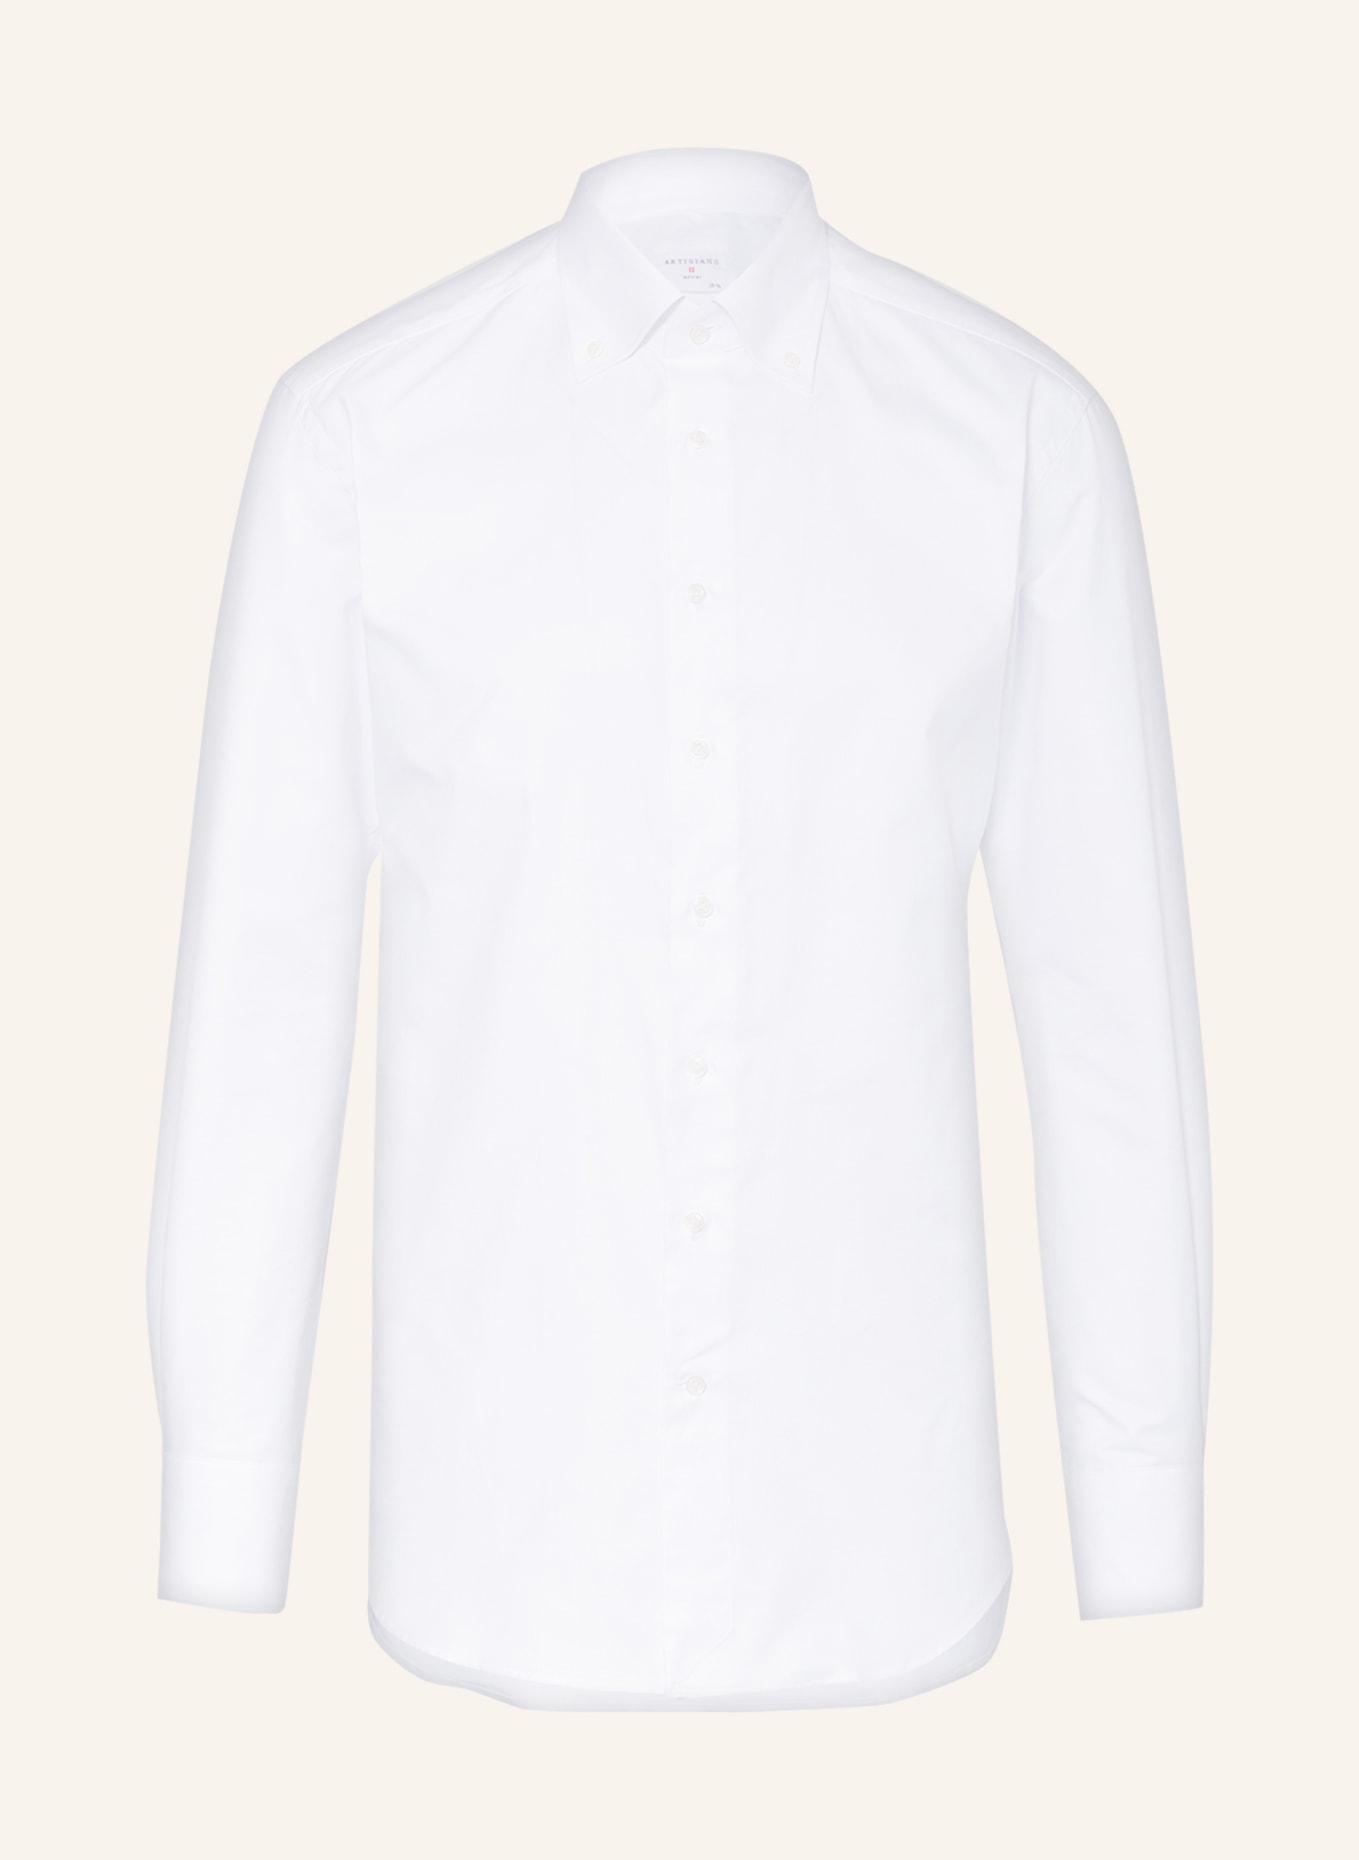 ARTIGIANO Piqué shirt classic fit , Color: WHITE (Image 1)